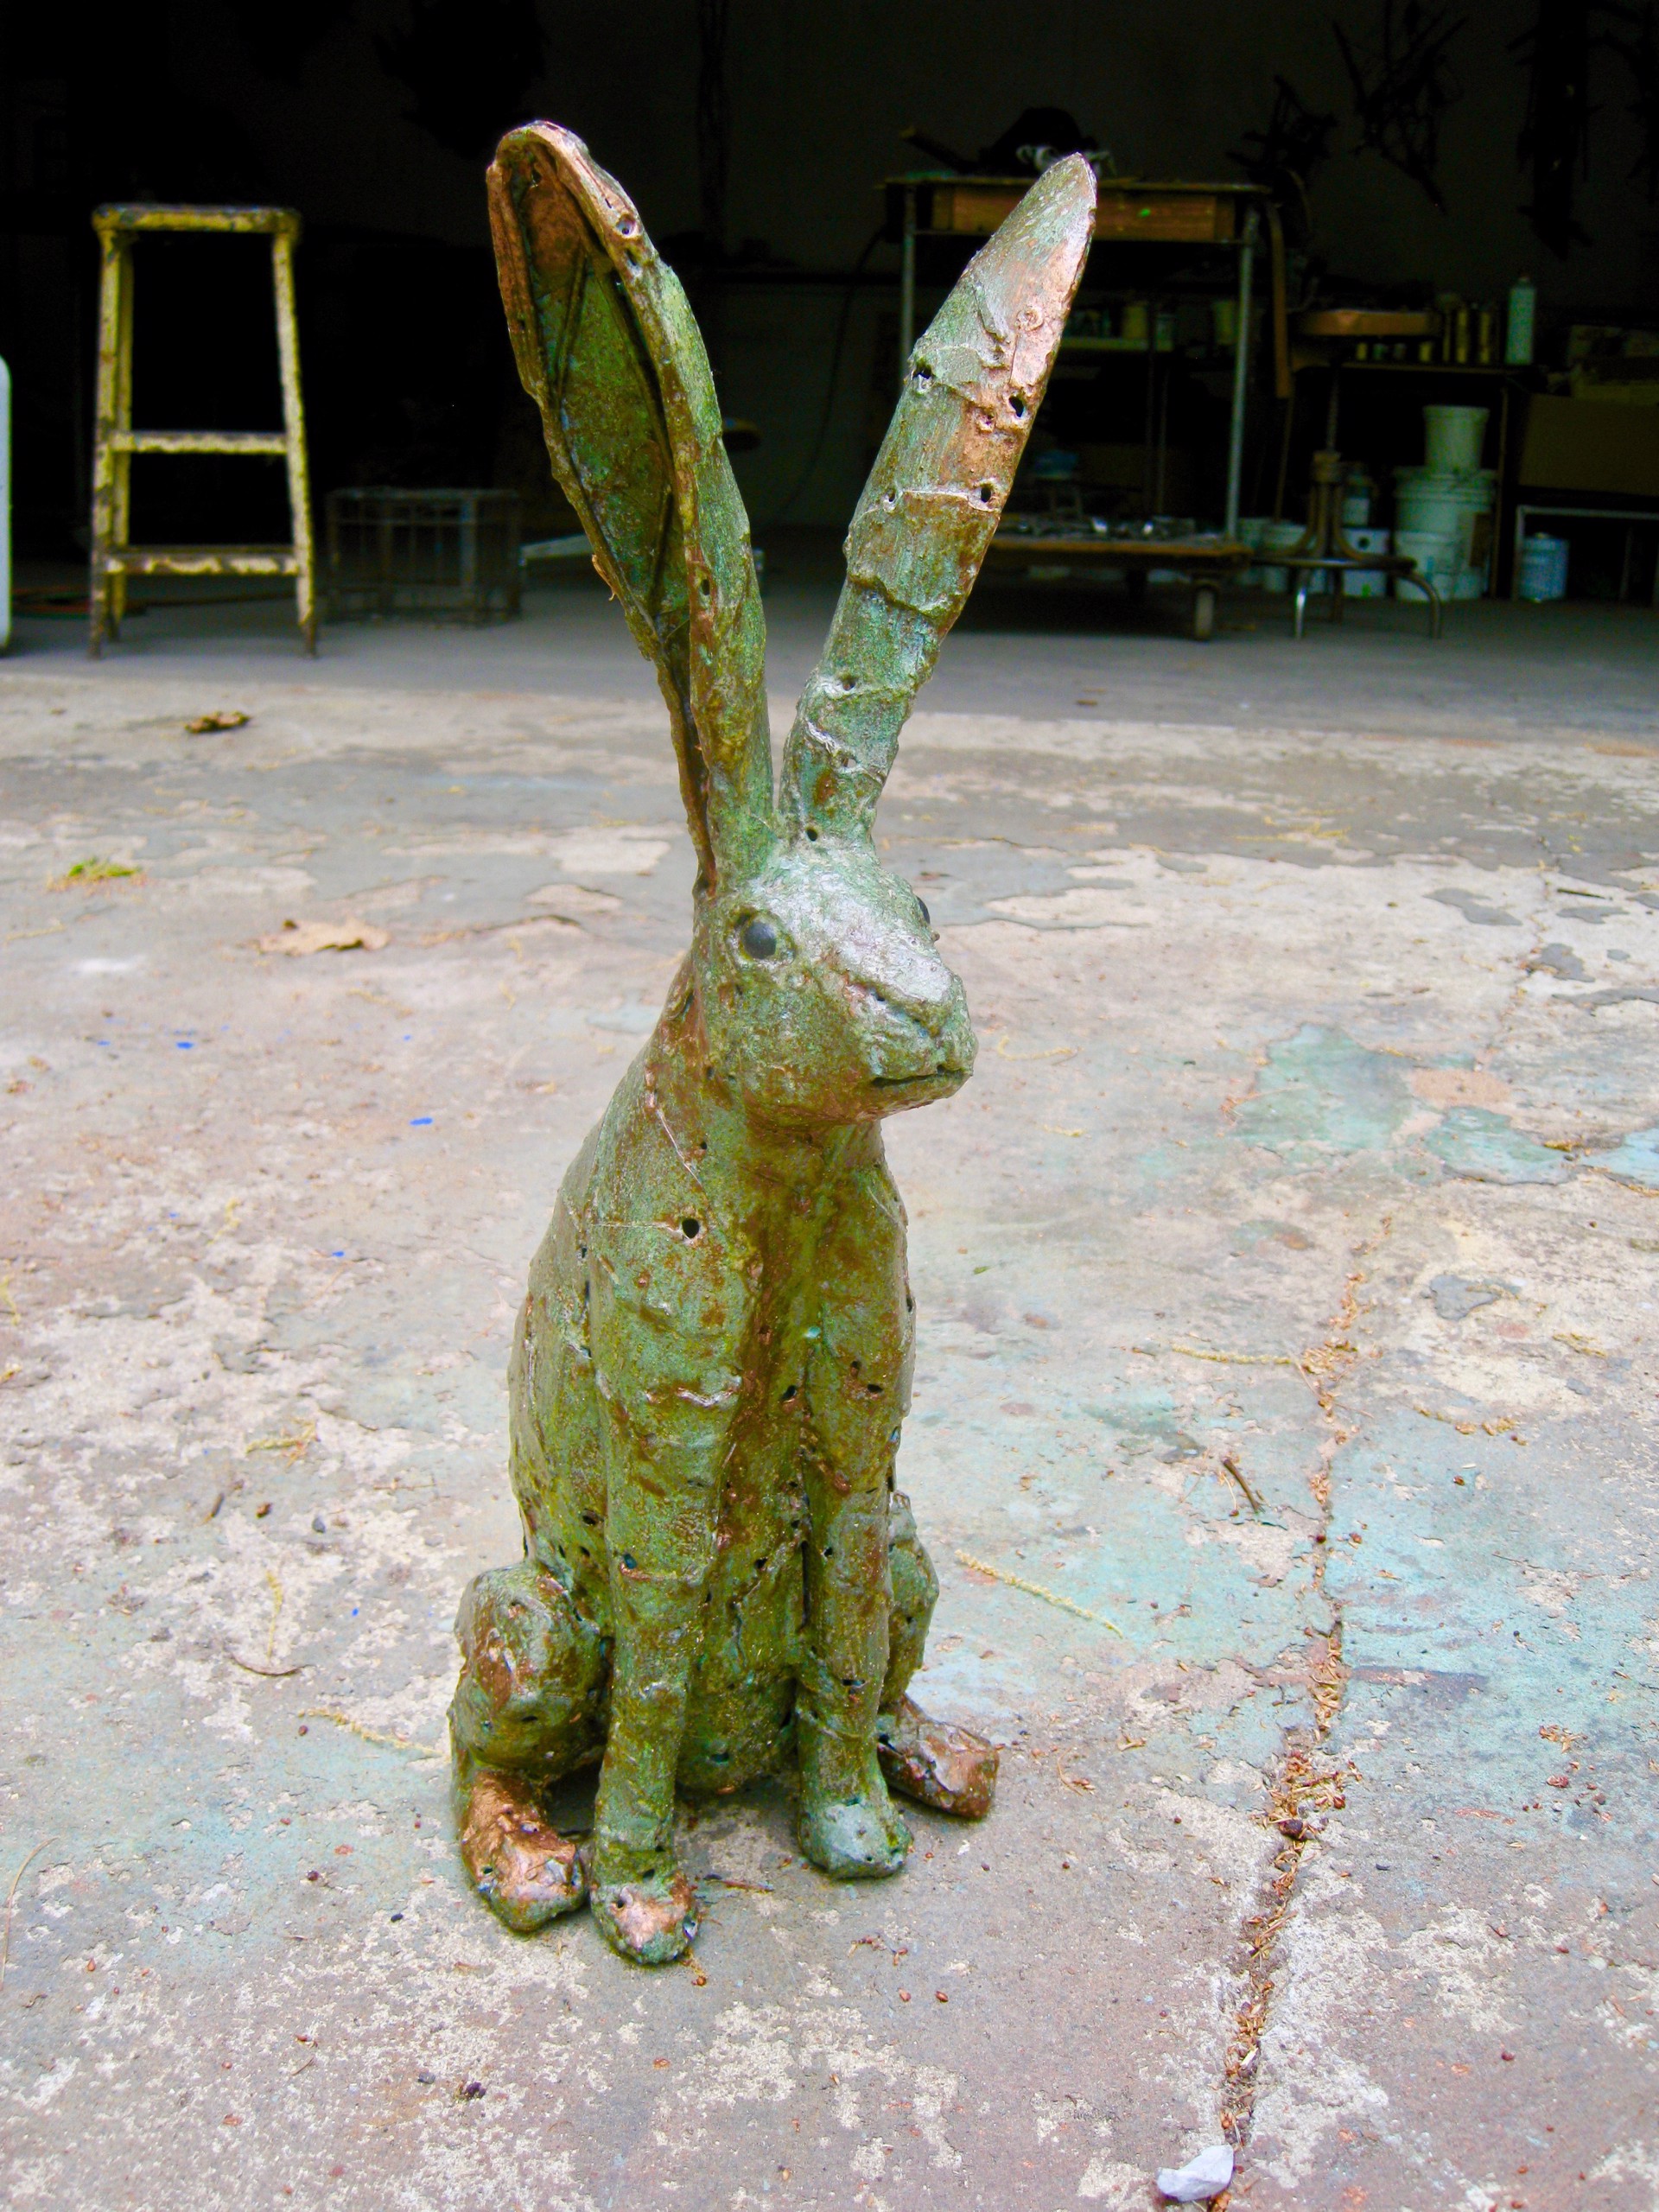 Jack Rabbit 2 by William Allen